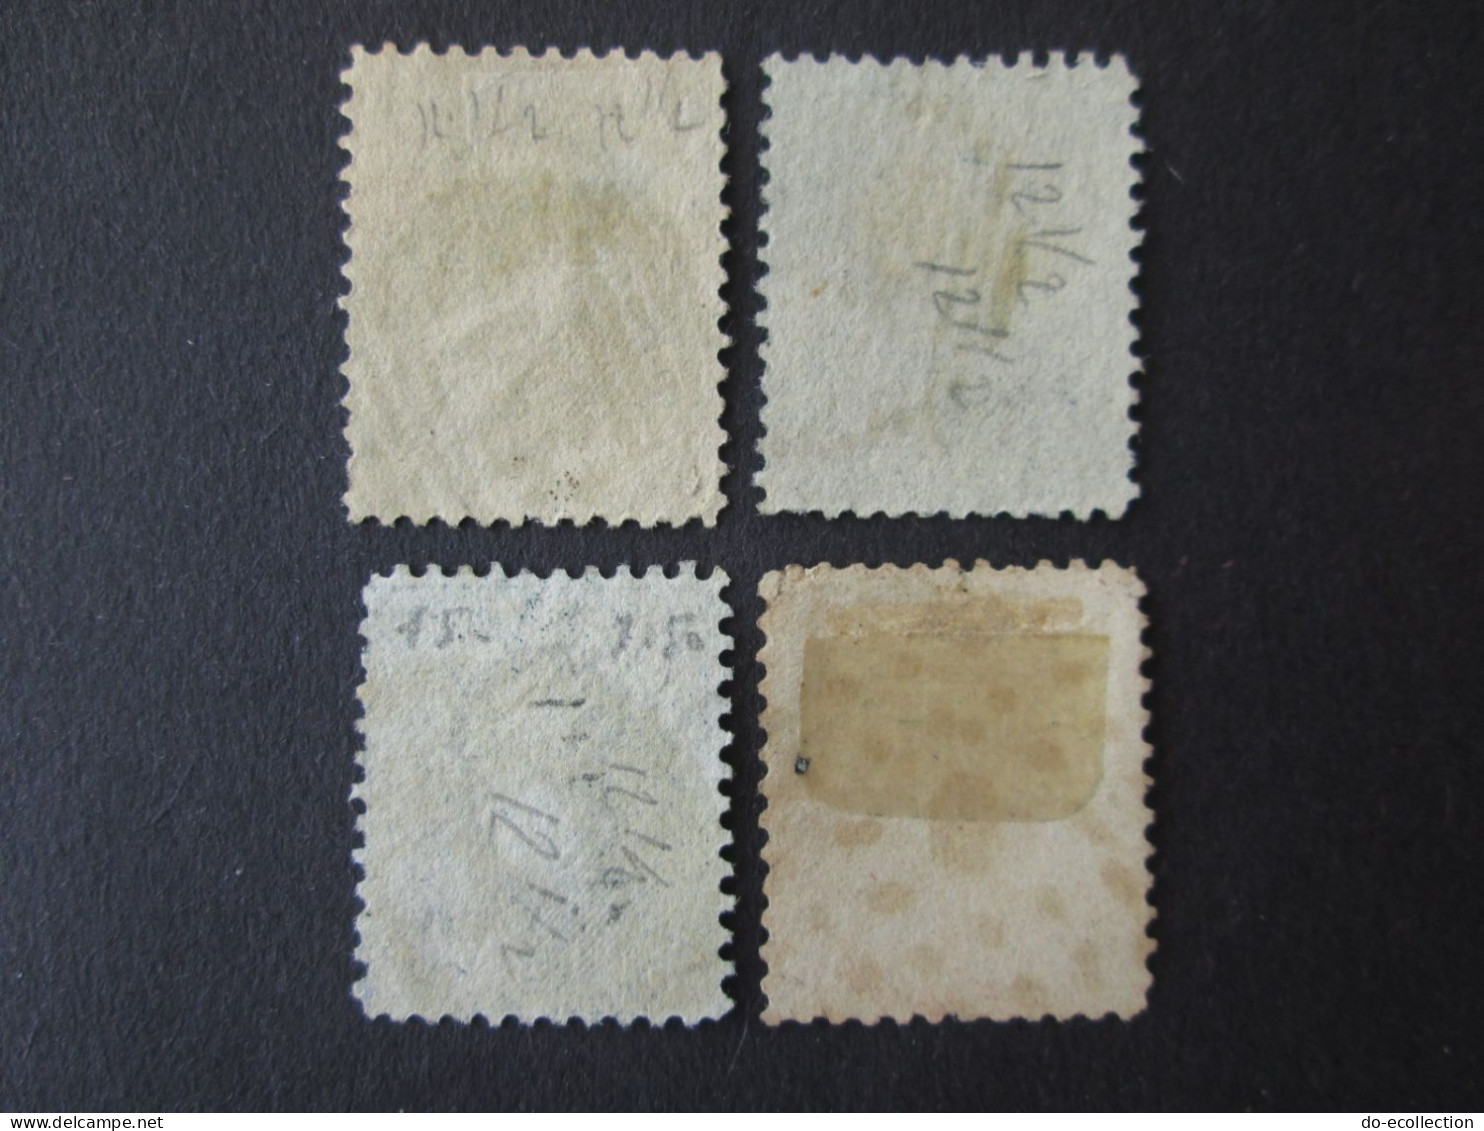 BELGIQUE 1863 Lot De 4 Timbres 10c 20c 40c Perf 12 1/2 Leopold I Dont Oblitération 4/9 Belgie Belgium Timbre Stamps - 1863-1864 Medaillen (13/16)